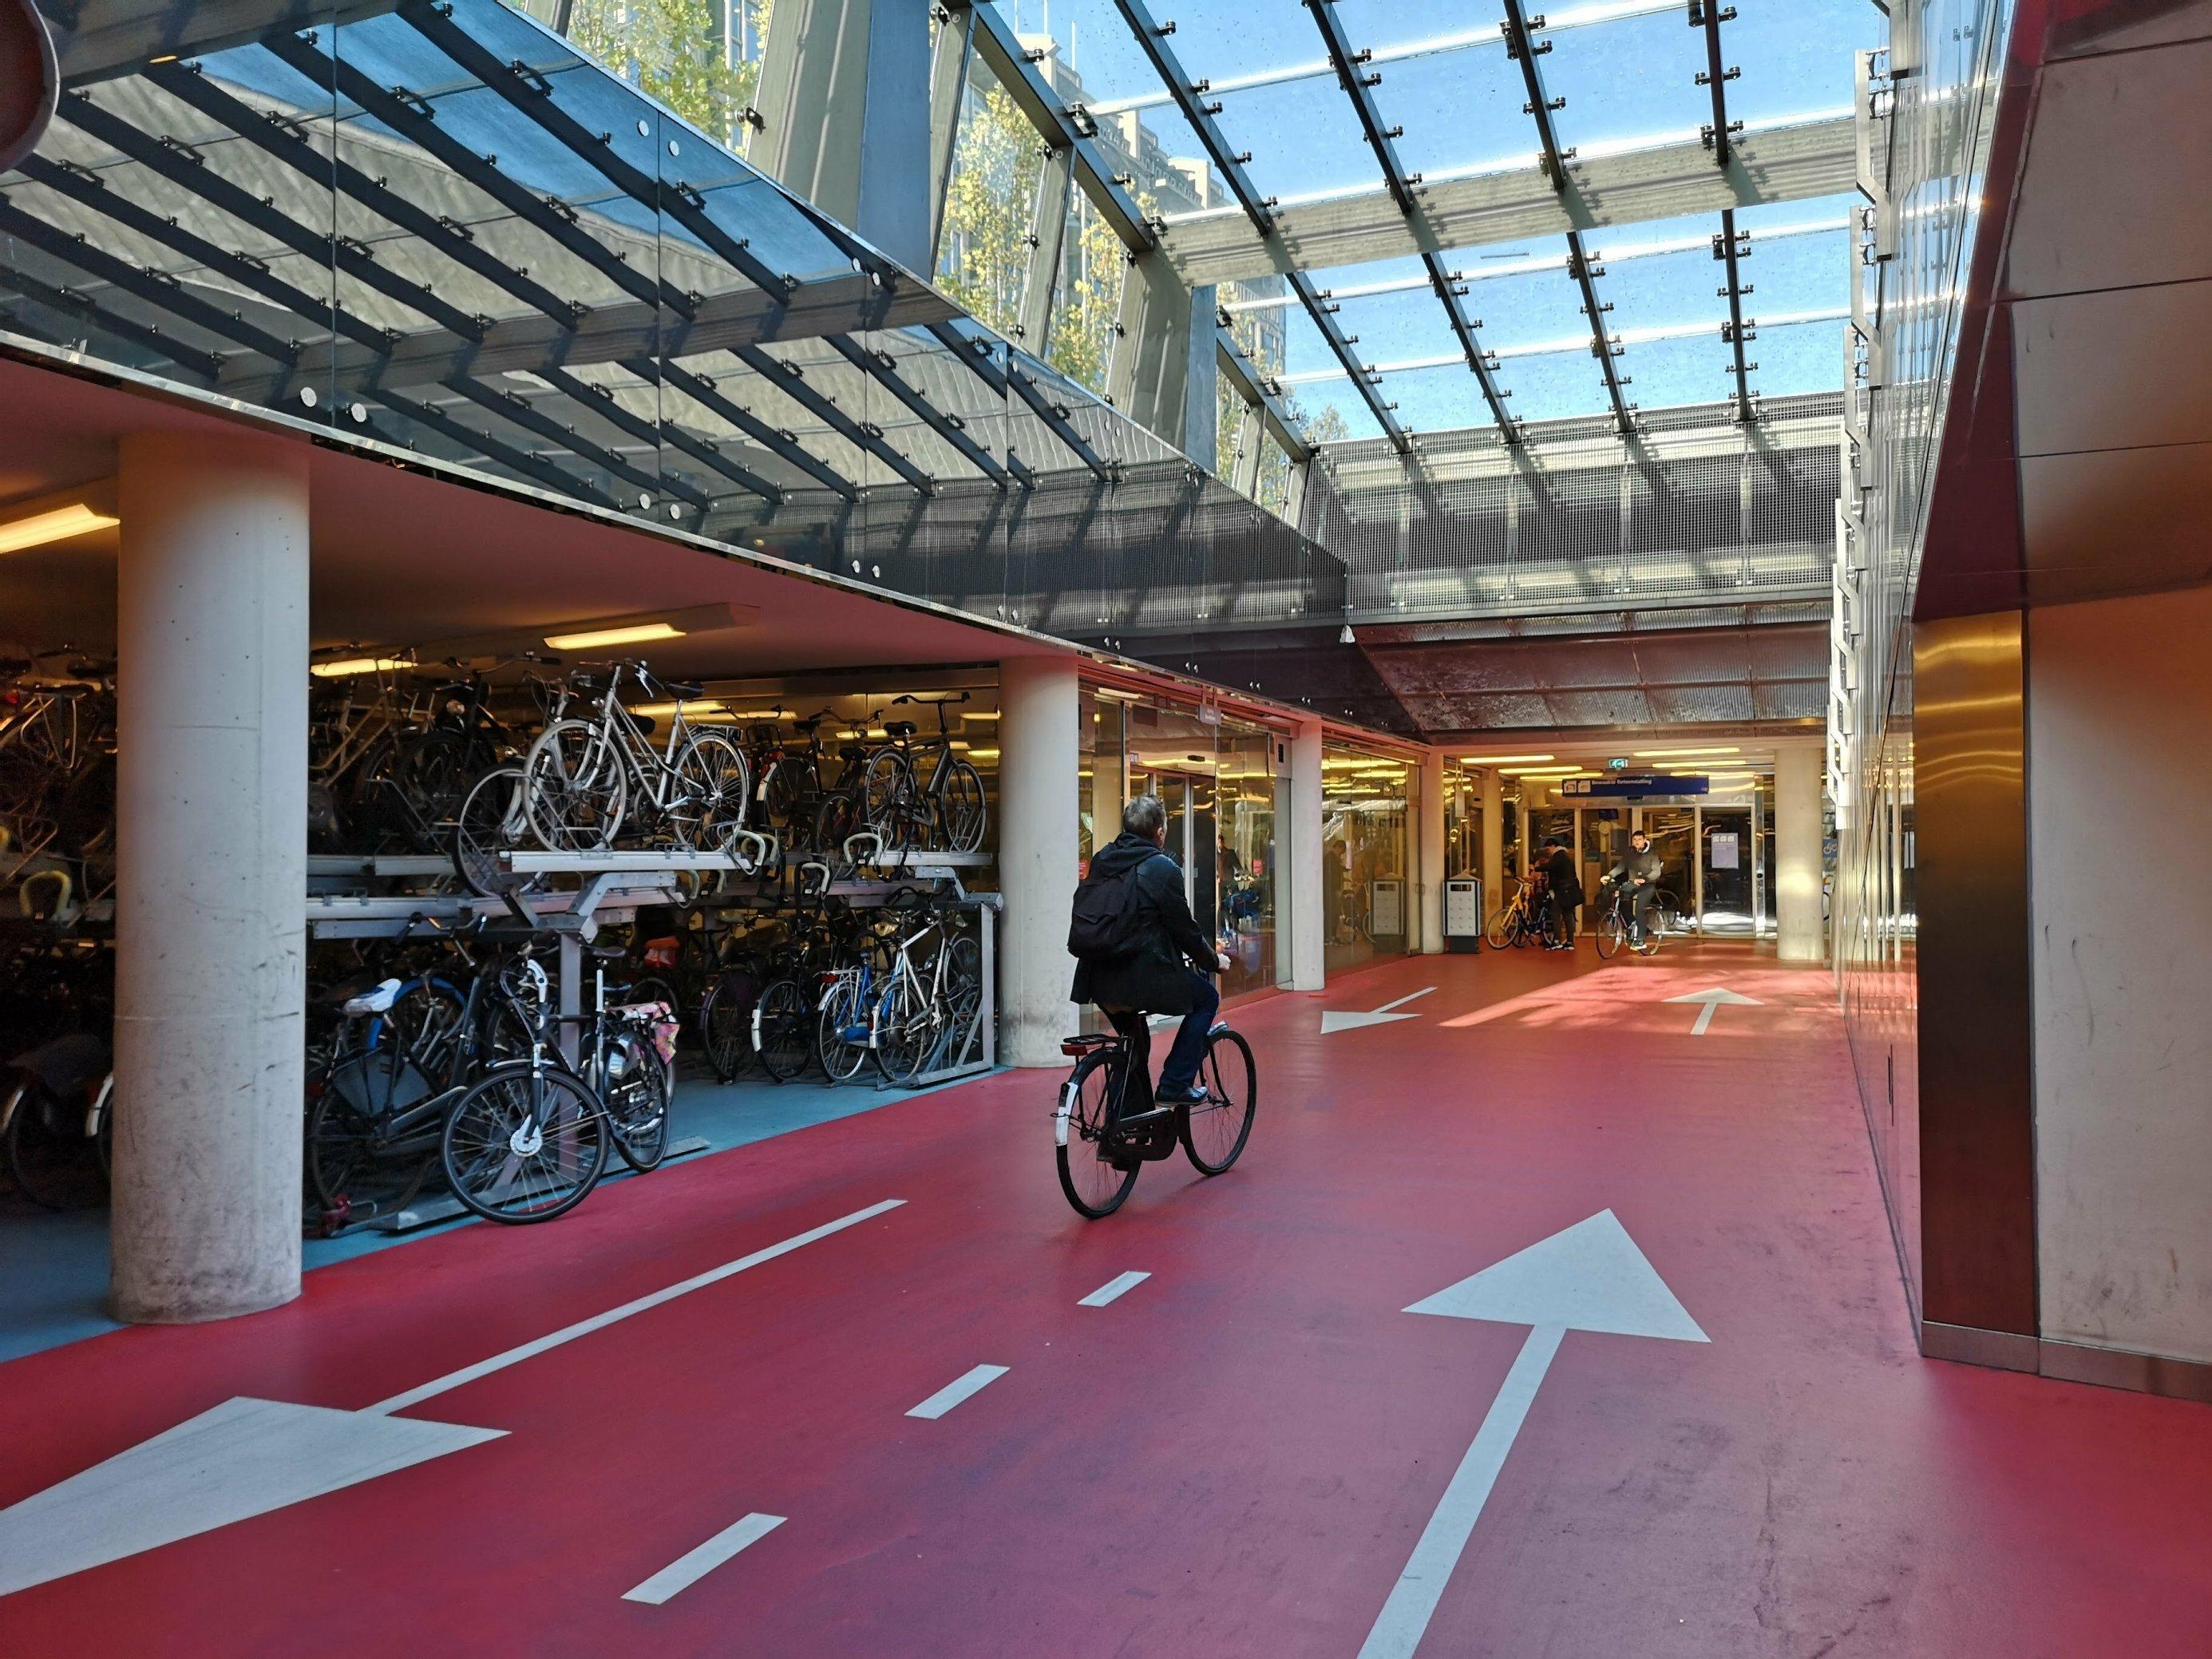 In Doppelstockgaragen sind die Fahrradräder in dem Parkhaus abgestellt. Ein Radfahrer fährt Richtung Ausgang